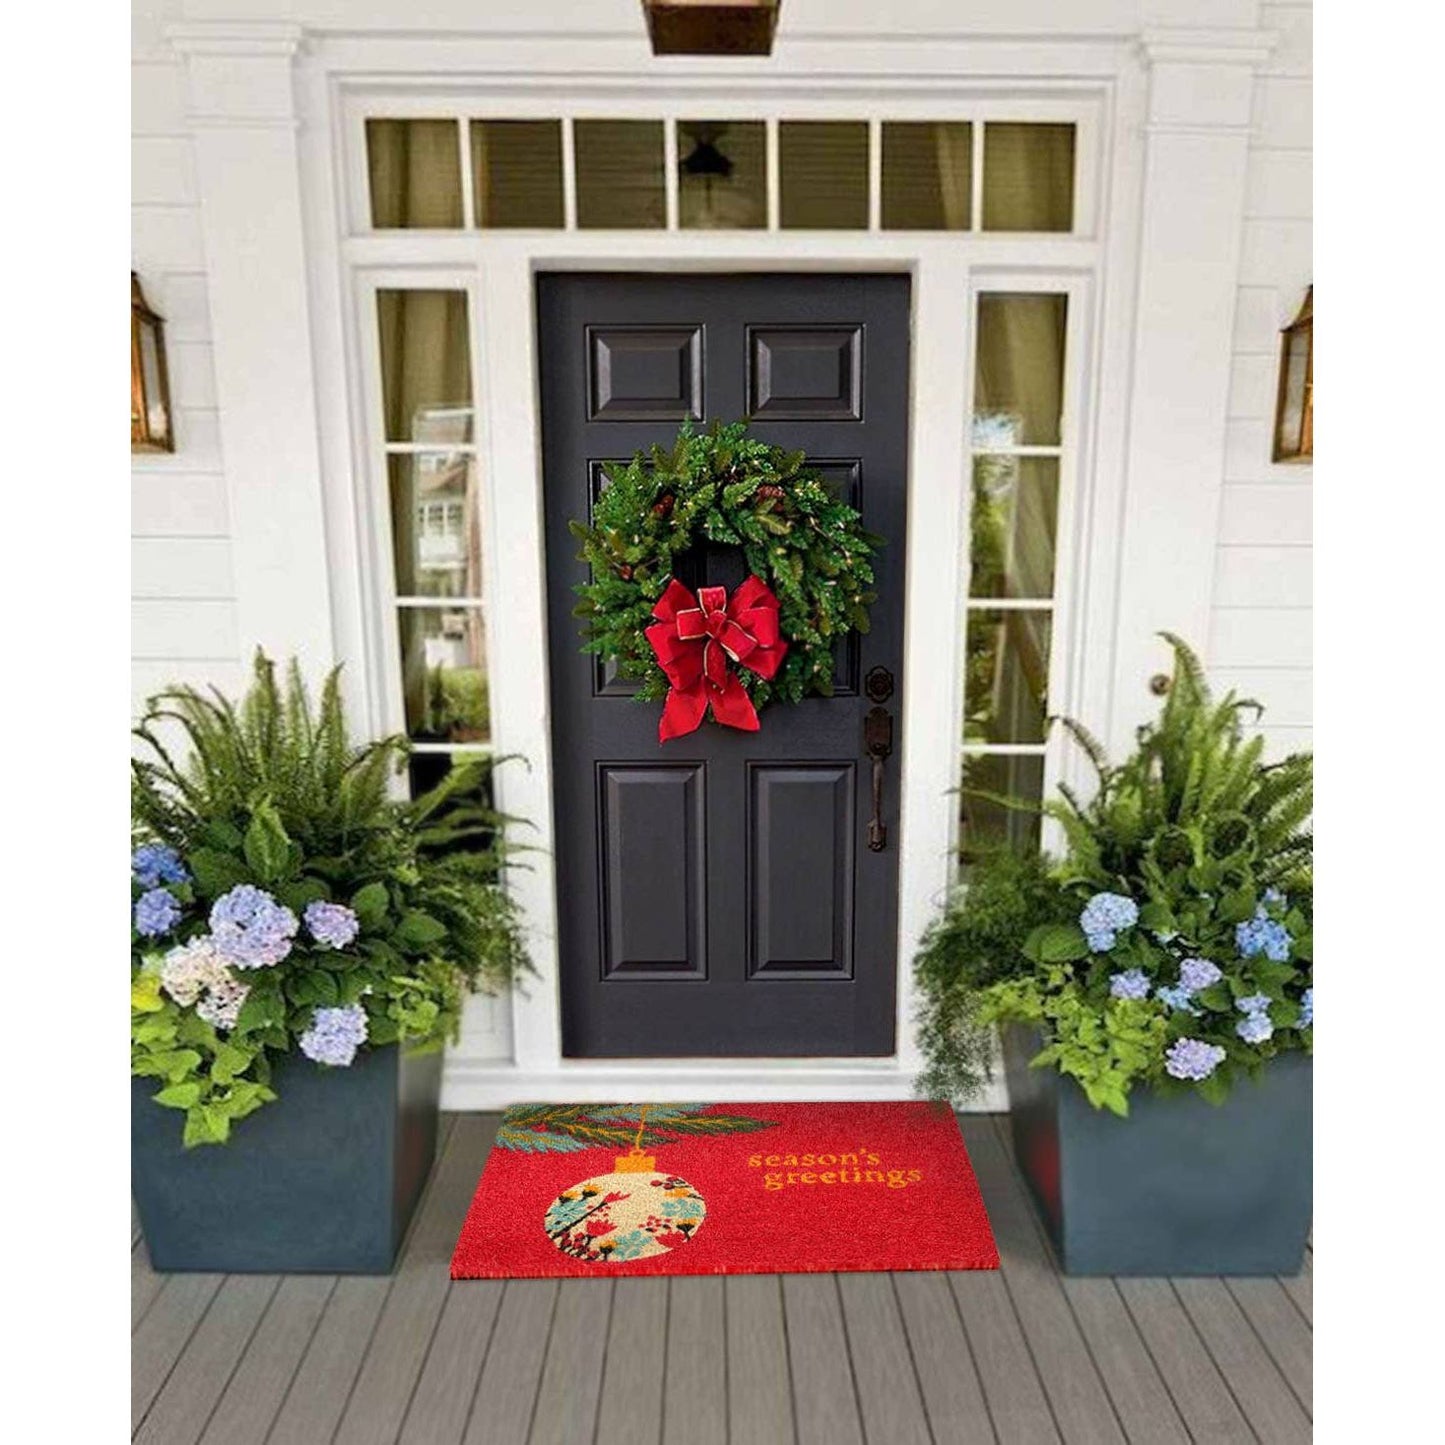 RugSmith Multi Tufted Seasons Greetings Doormat, 18" x 30"Heart